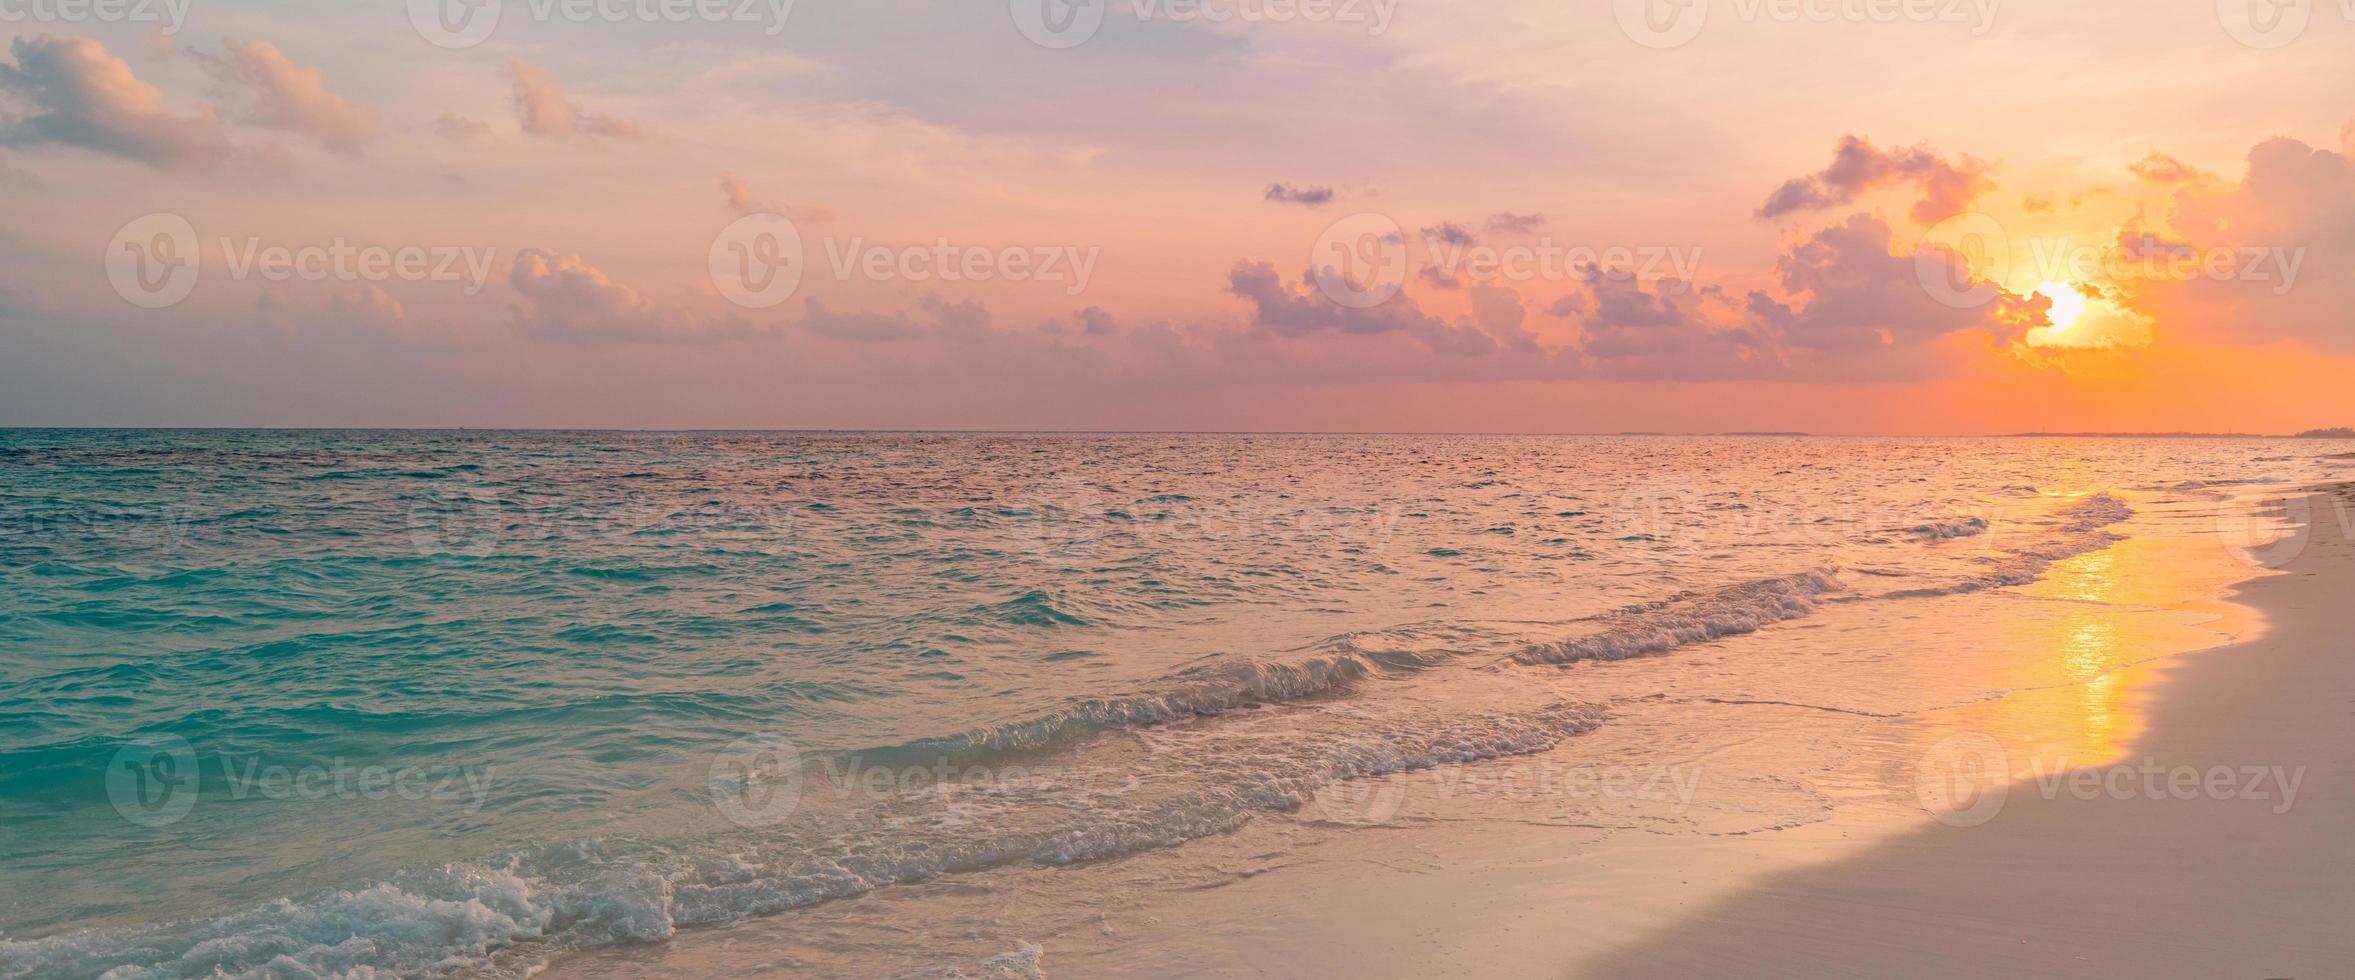 primer plano de la playa de arena de mar. paisaje panorámico de la playa. inspirar el horizonte del paisaje marino de la playa tropical. cielo de puesta de sol de sueño dorado, calma, tranquilidad, sol relajante, olas de la costa de verano. banner de vacaciones de viajes de vacaciones foto